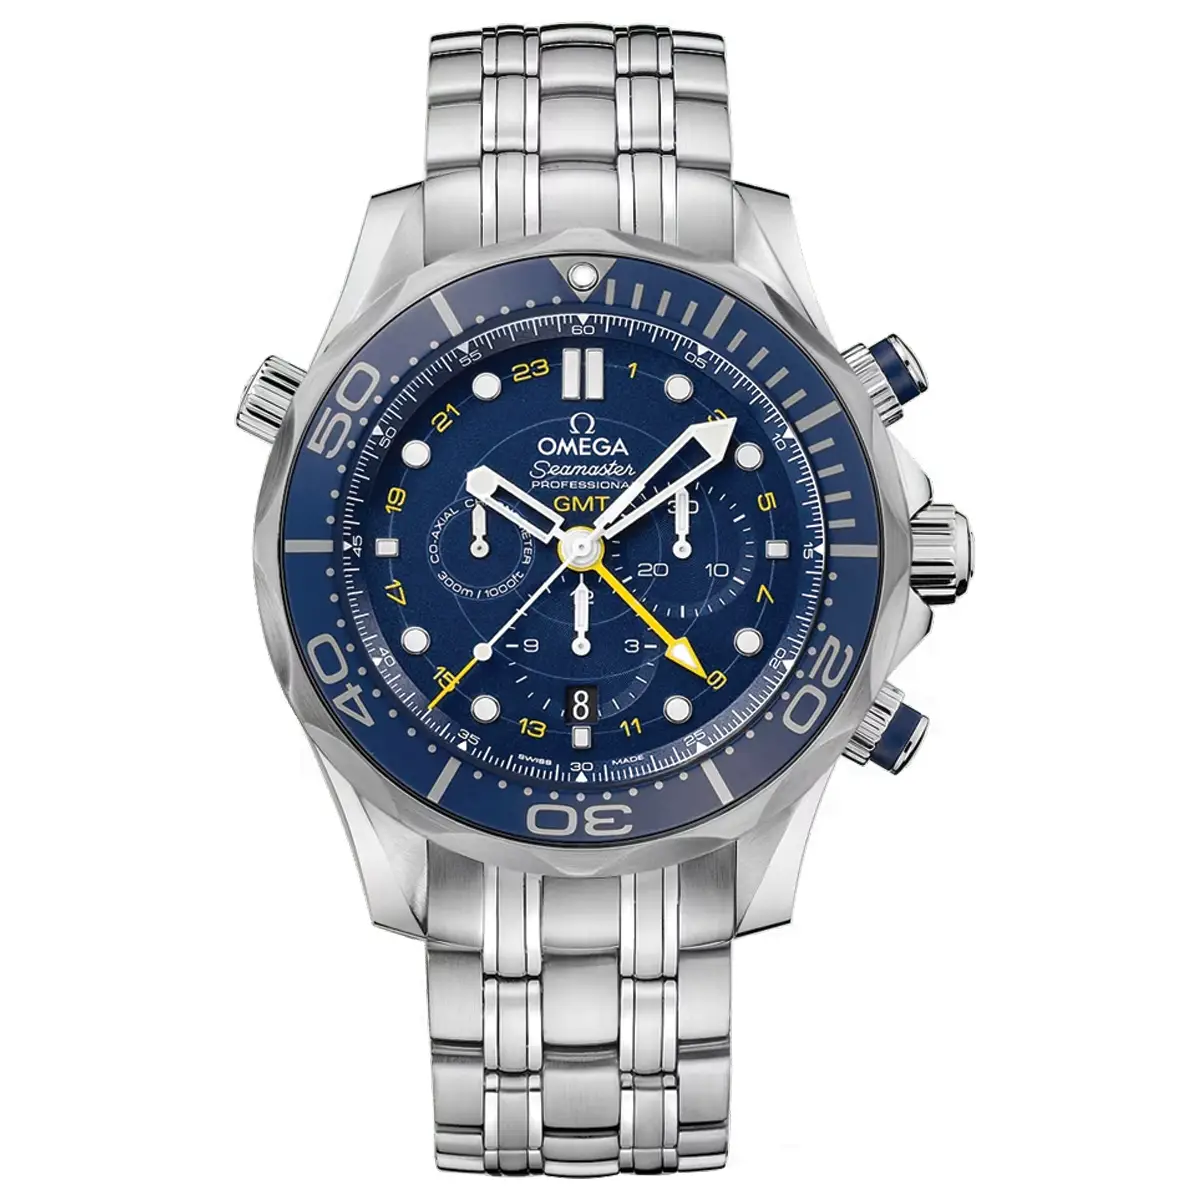 Đồng Hồ Omega Seamaster Diver 300M Chronometer GMT Chronograph 212.30.44.52.03.001 mặt số màu xanh đen. thiết kế lộ cơ. Dây đeo và thân vỏ bằng thép không gỉ.